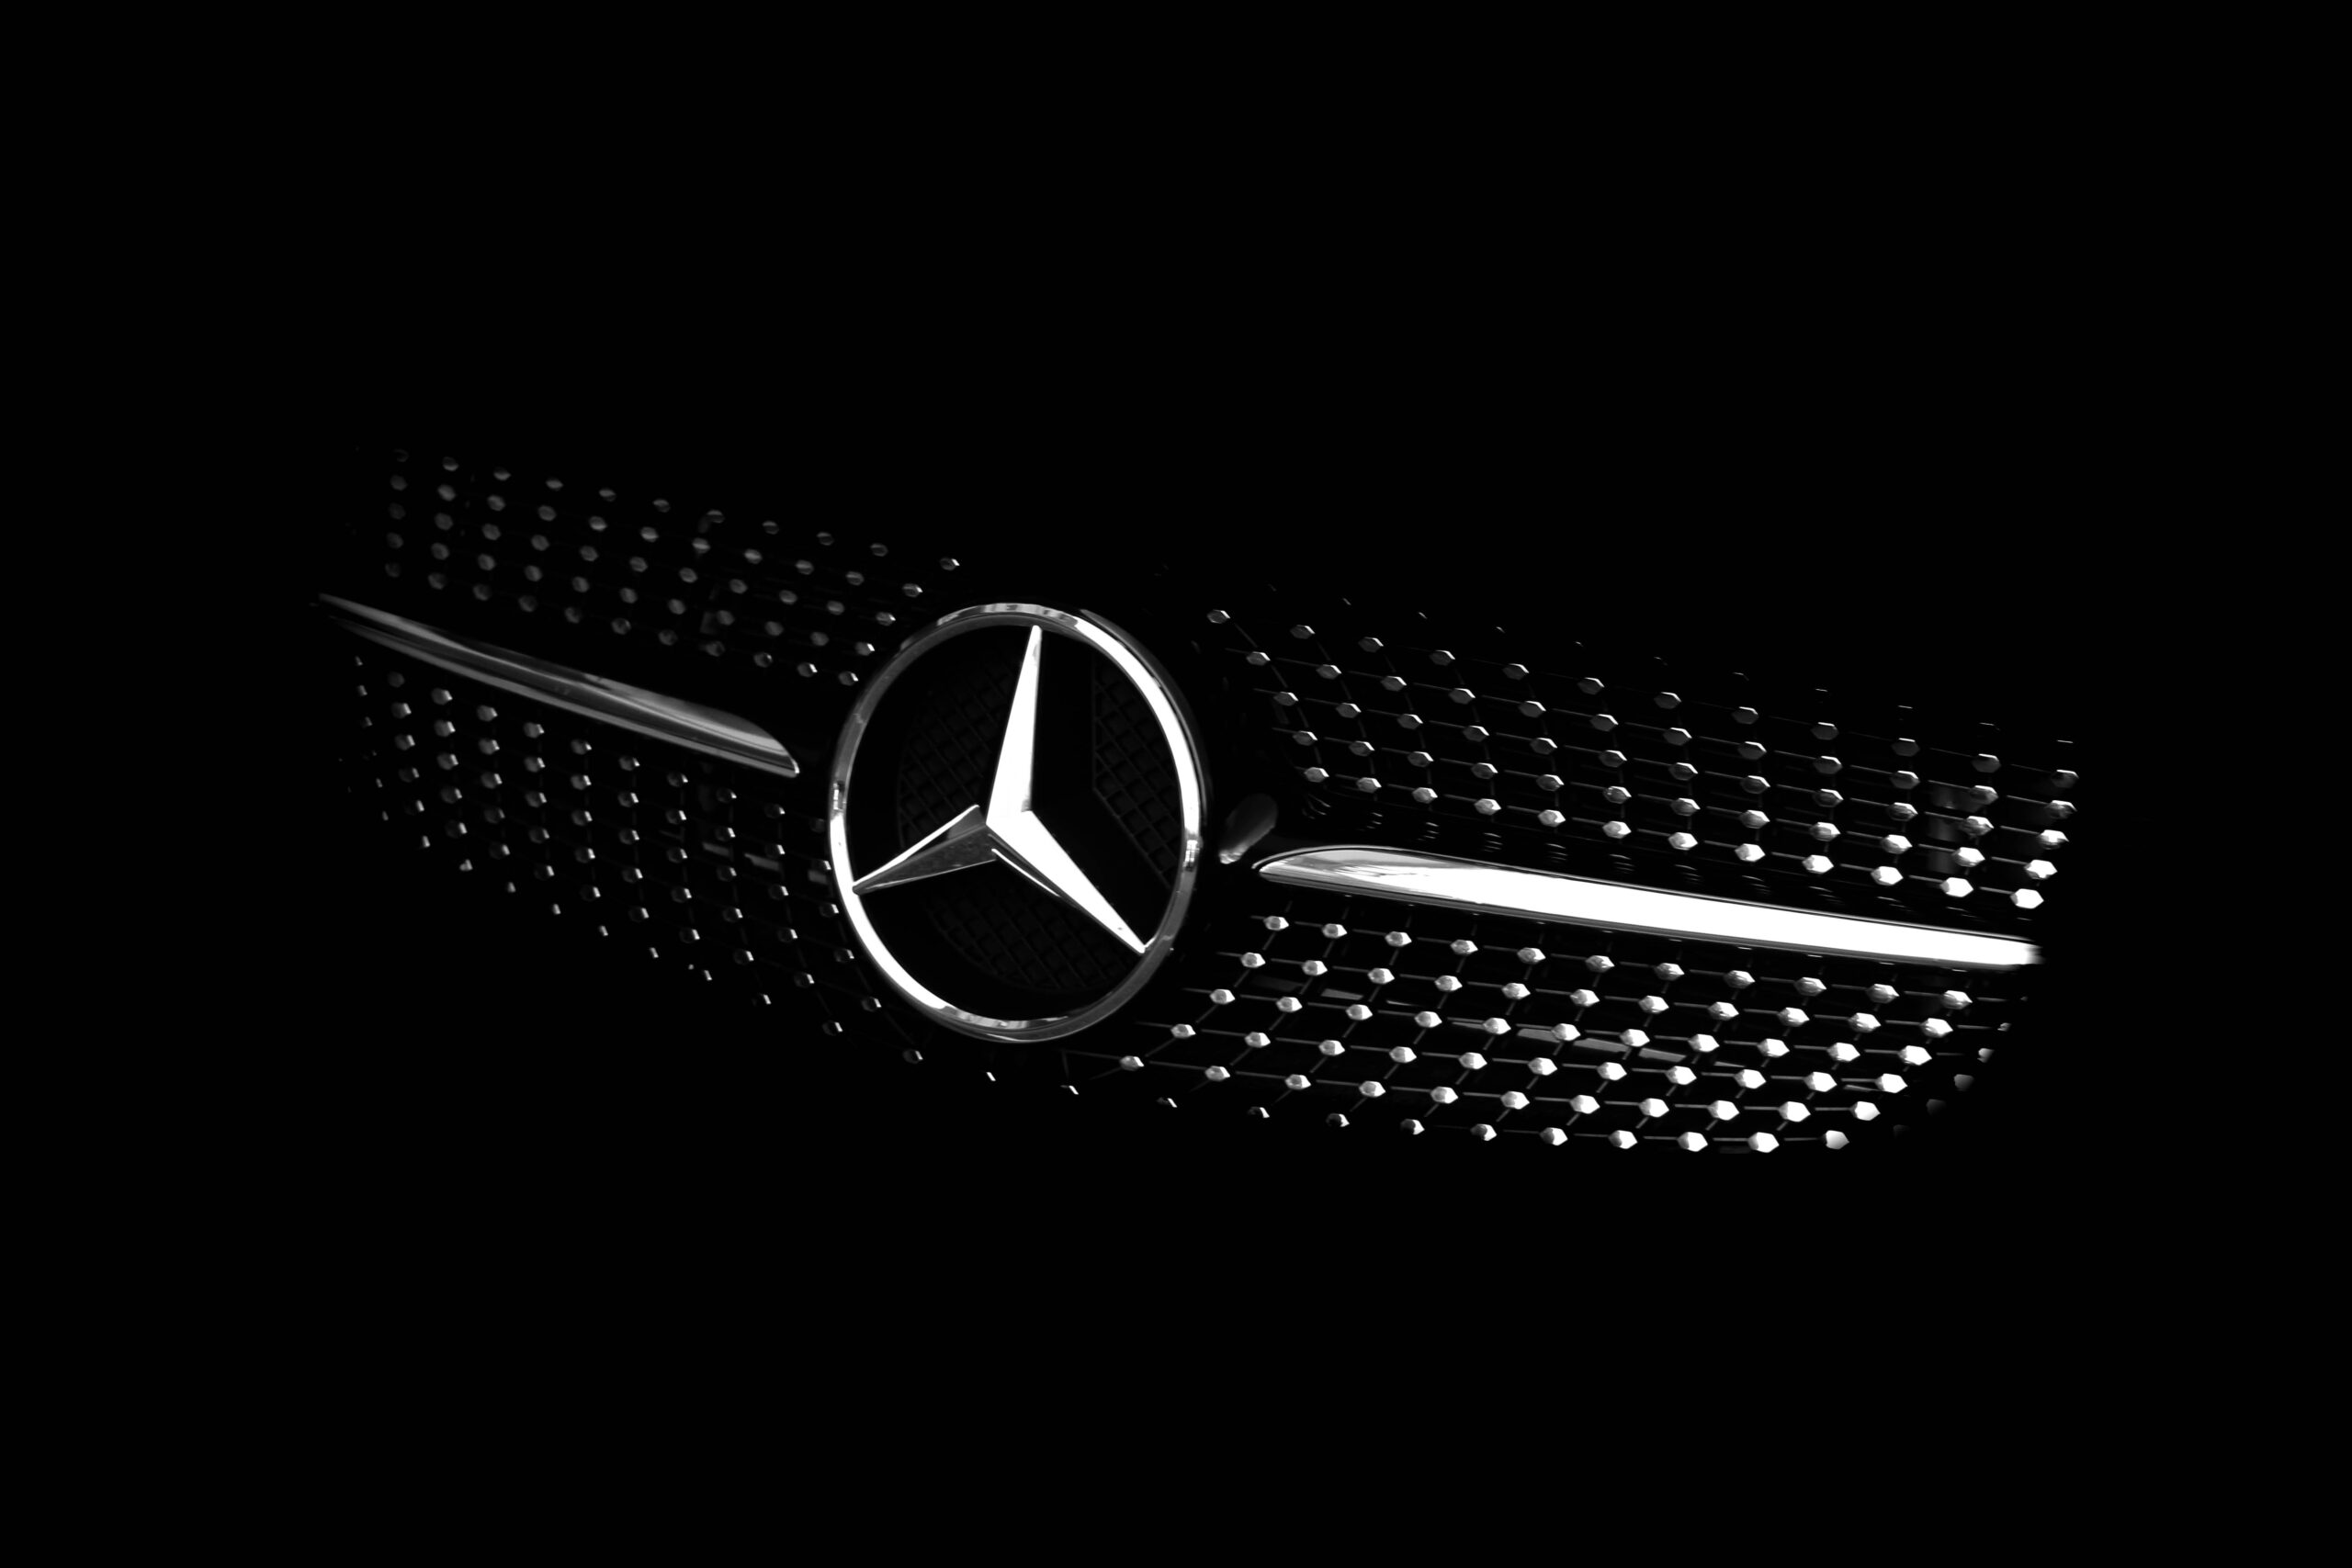 La asombrosa historia y evolución de Mercedes-Benz desde su fundación